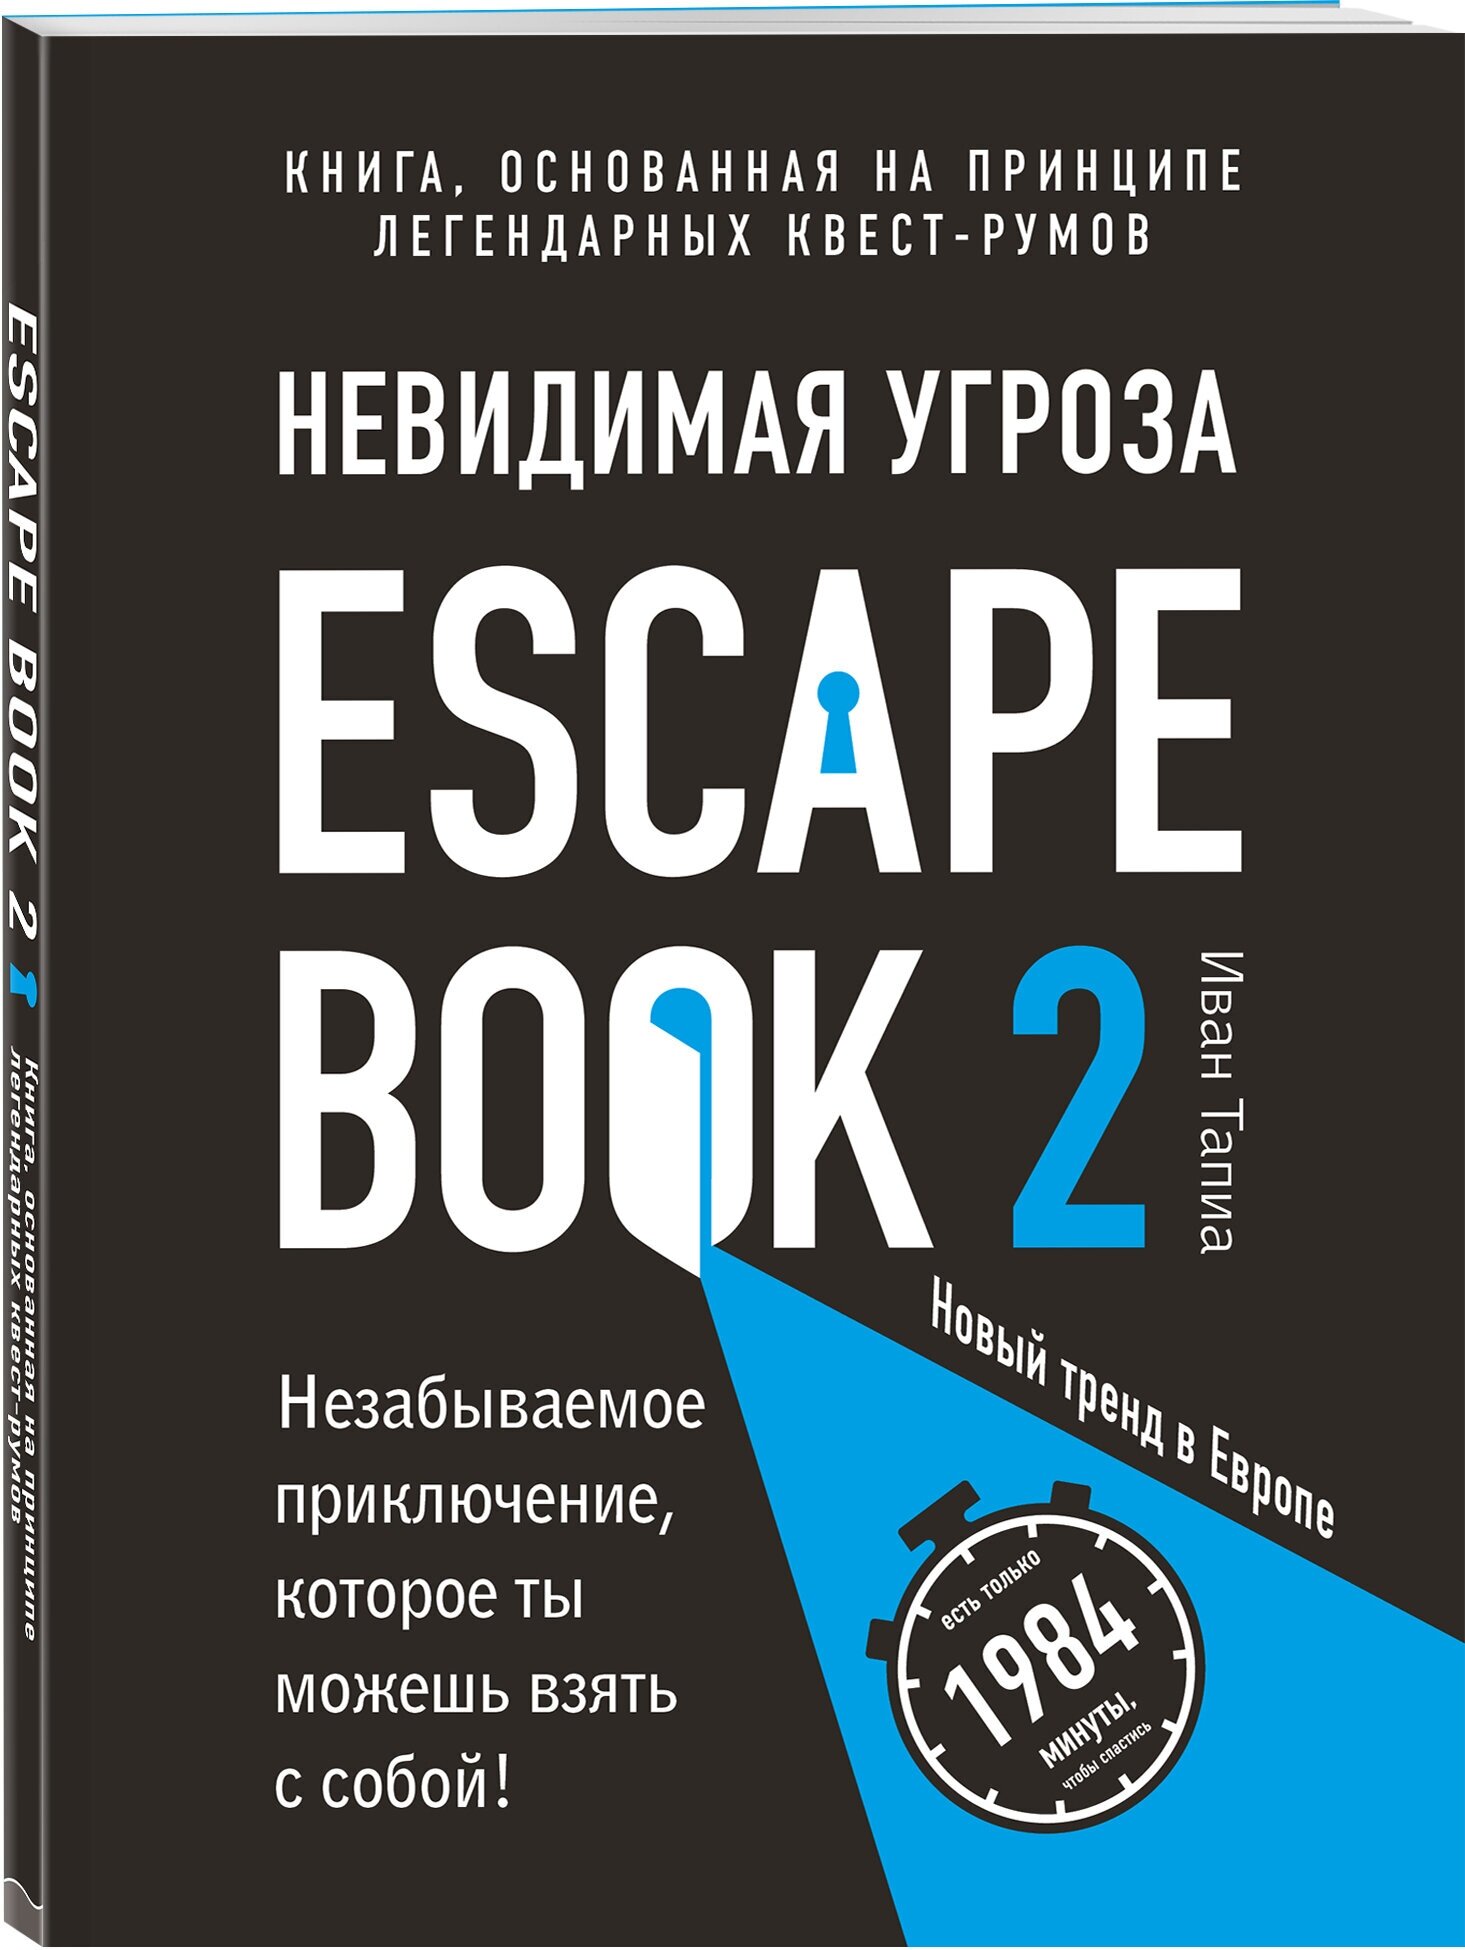 Тапиа И. Escape Book 2: невидимая угроза. Книга, основанная на принципе легендарных квест-румов